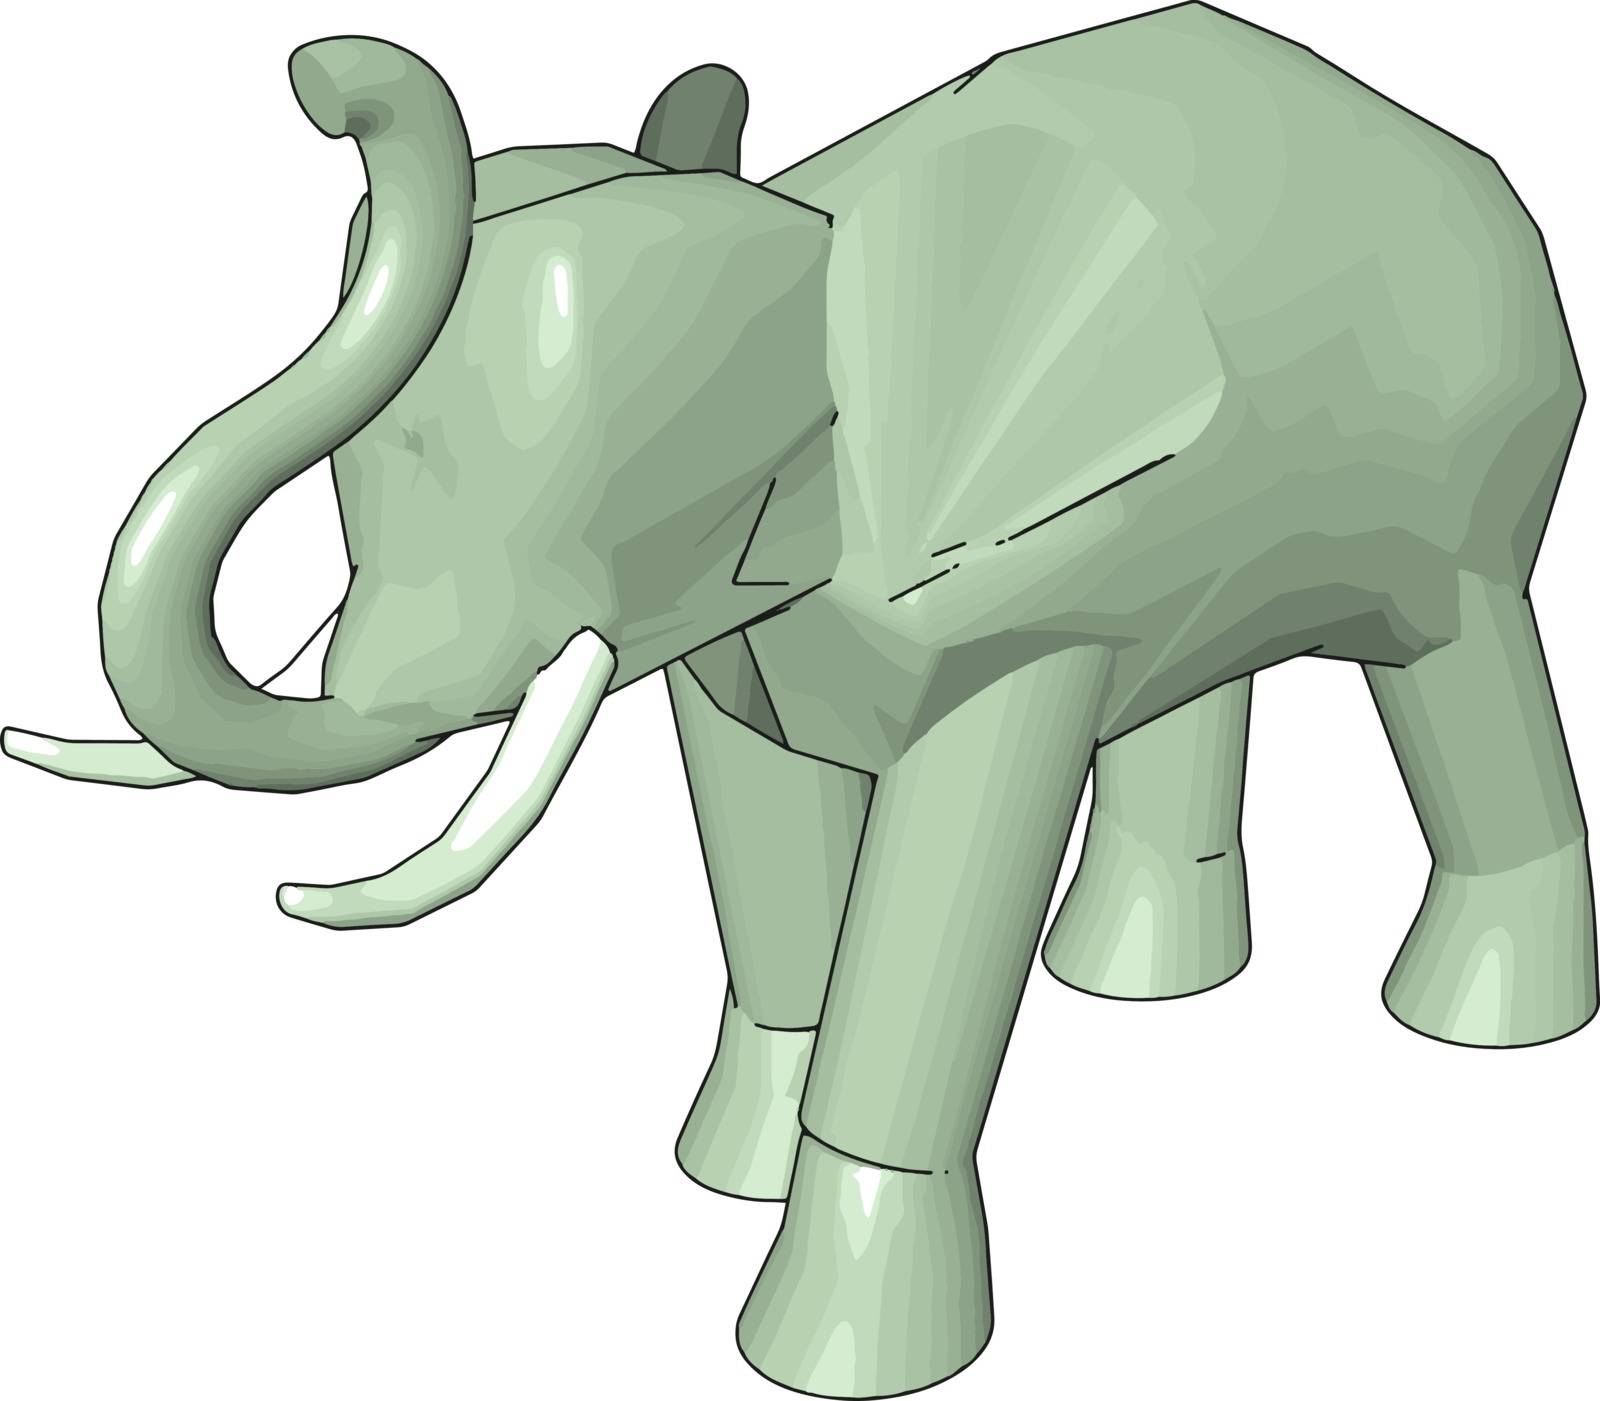 3D model of elephant, illustration, vector on white background. by Morphart